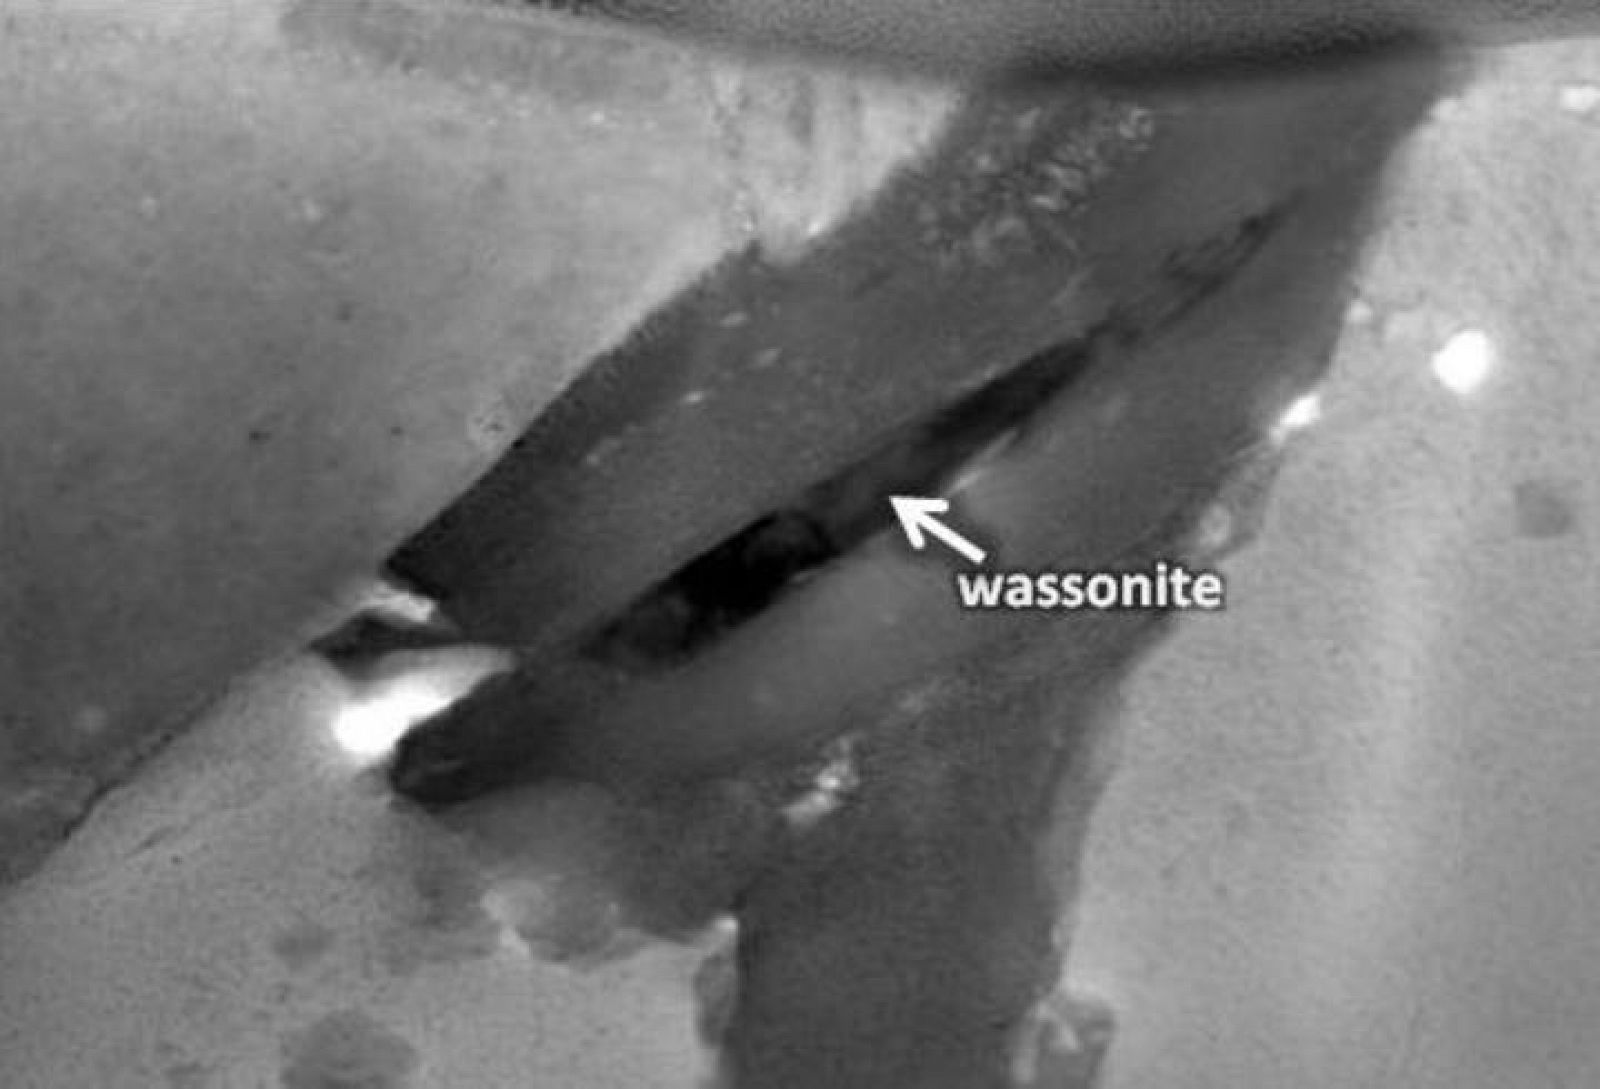 Encontrar un mineral tan minúsculo fue posible gracias al microscopio de transmisión de electrones de la NASA, capaz de aislar los granos de la wasonita